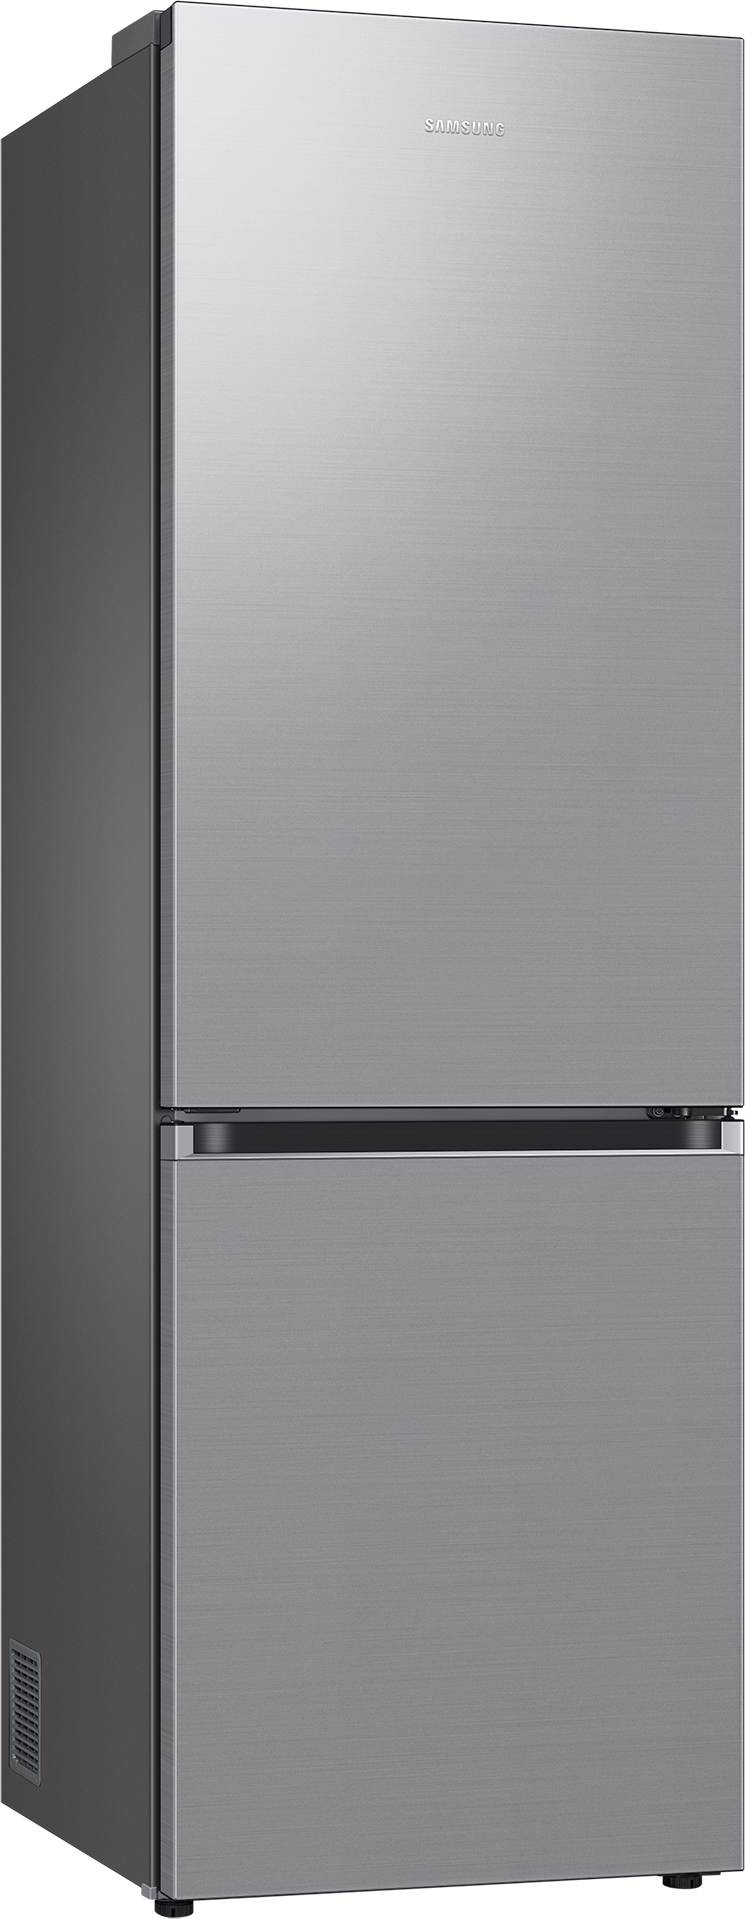 SAMSUNG Réfrigérateur congélateur bas Froid Ventilé No Frost 344L  - RB34C704DSA